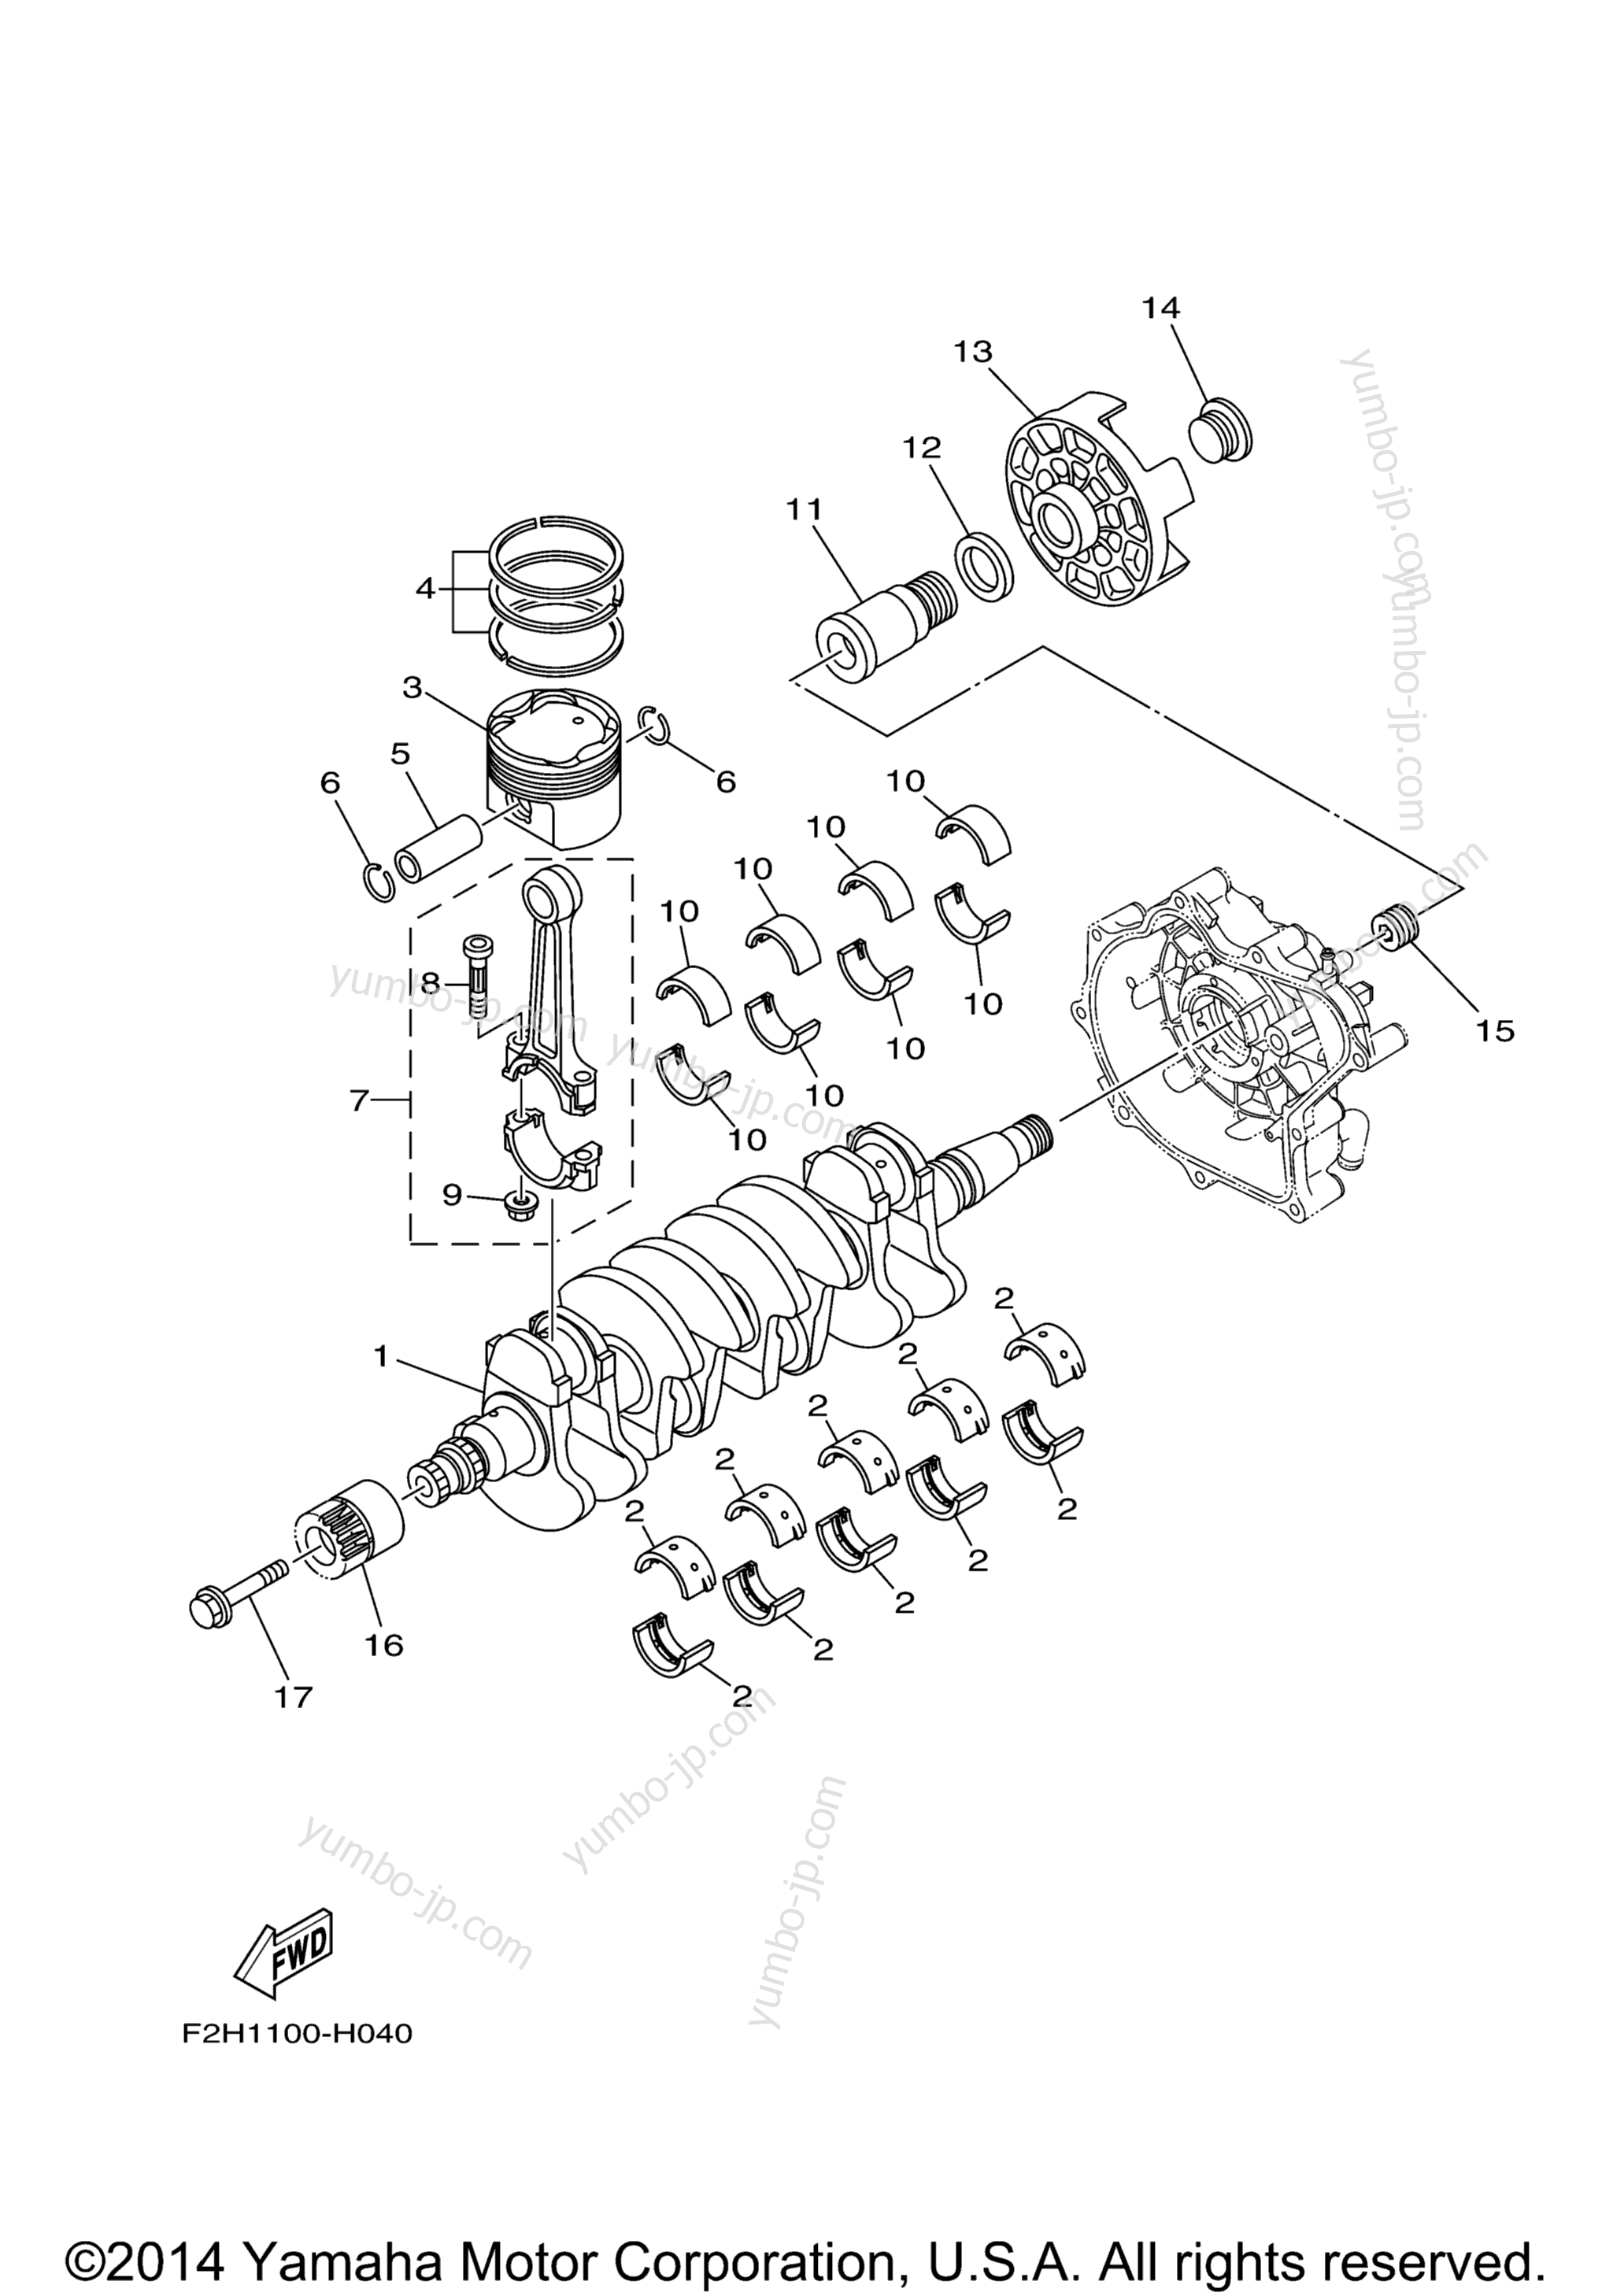 Crankshaft & Piston для катеров YAMAHA AR190 (RX1800BL) 2012 г.